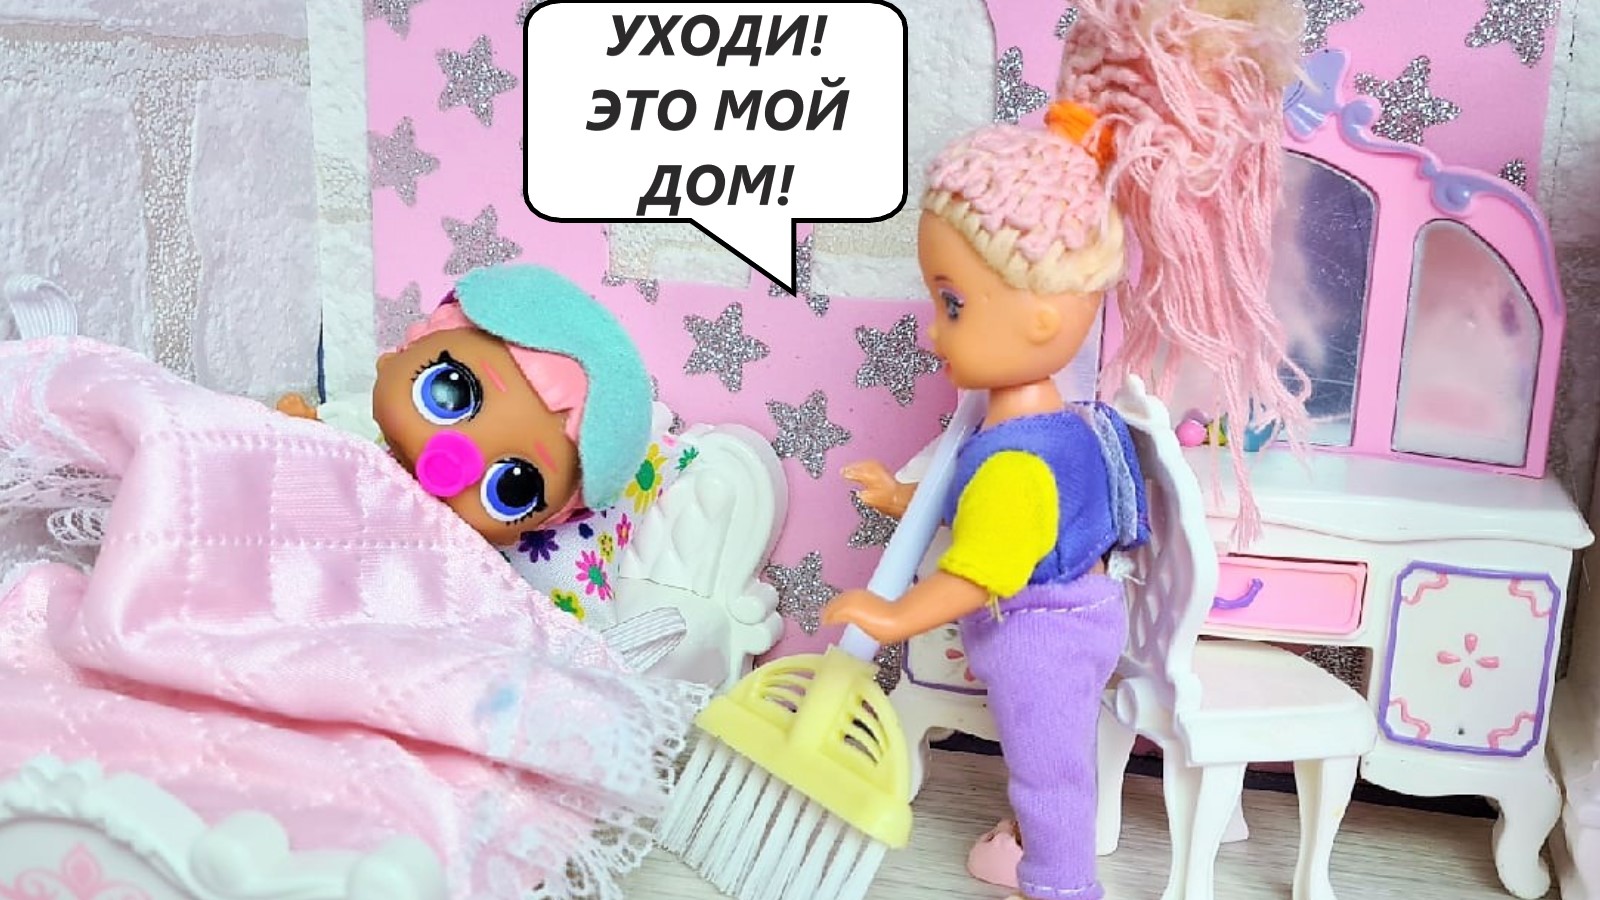 Проснулась в чужом доме куклы лол сюрприз мультики даринелка